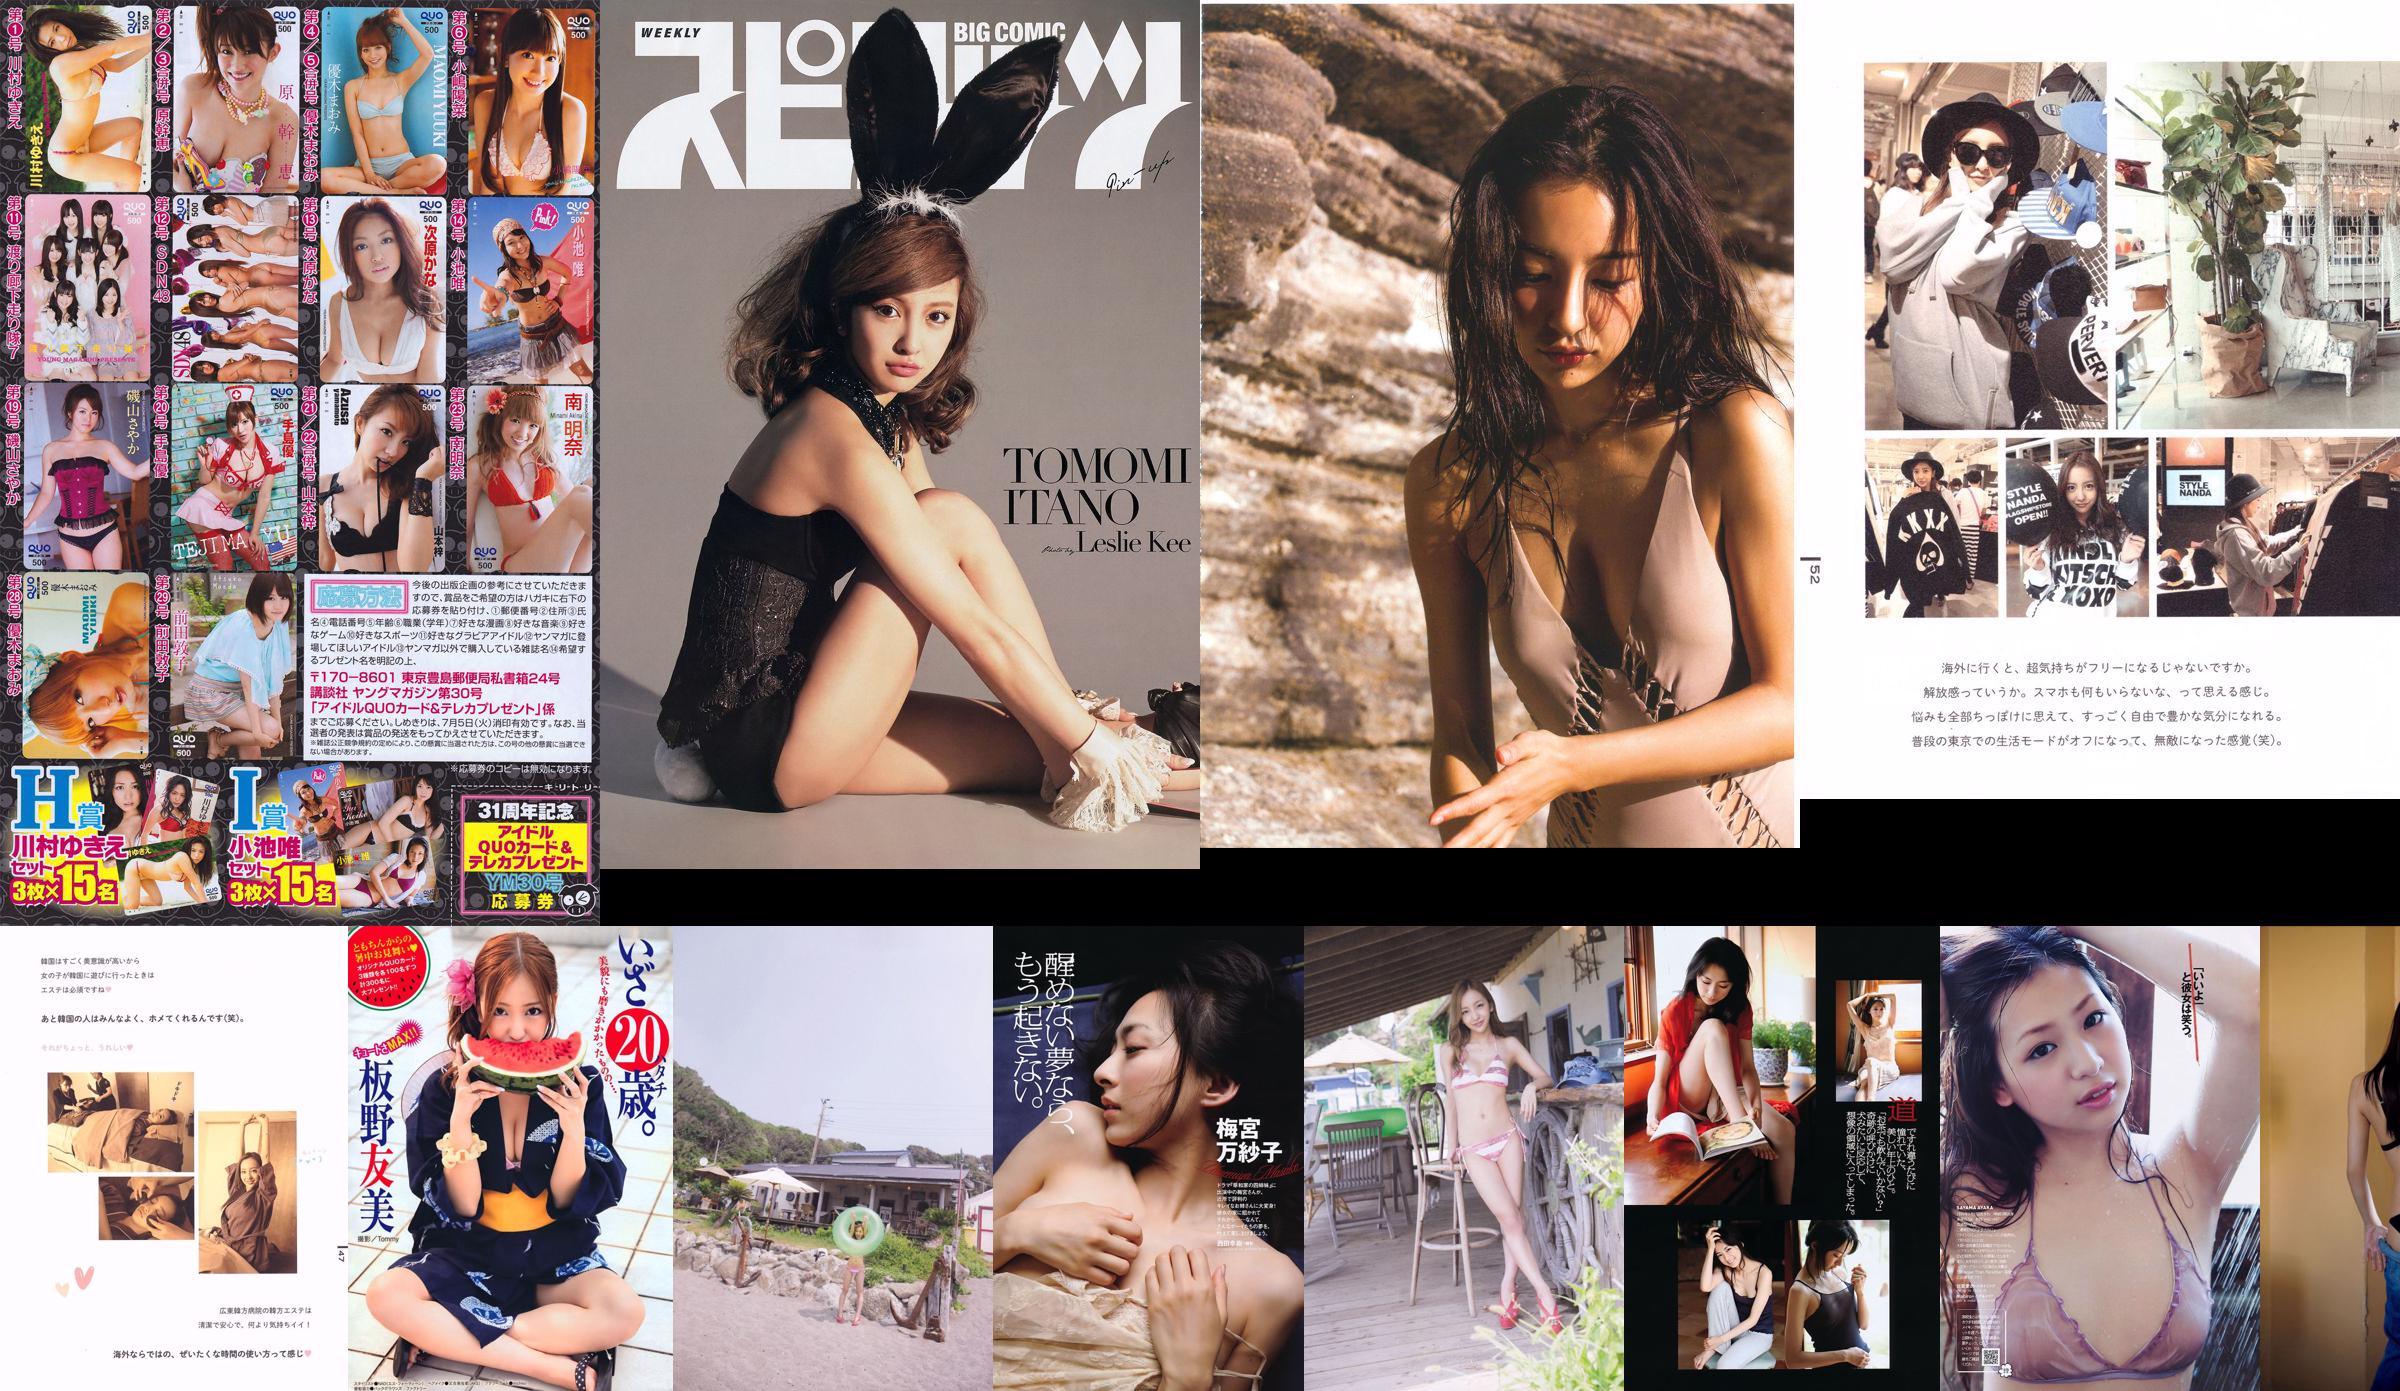 10e anniversaire de Tomomi Itano "Luv U" [PB] No.c258fb Page 1